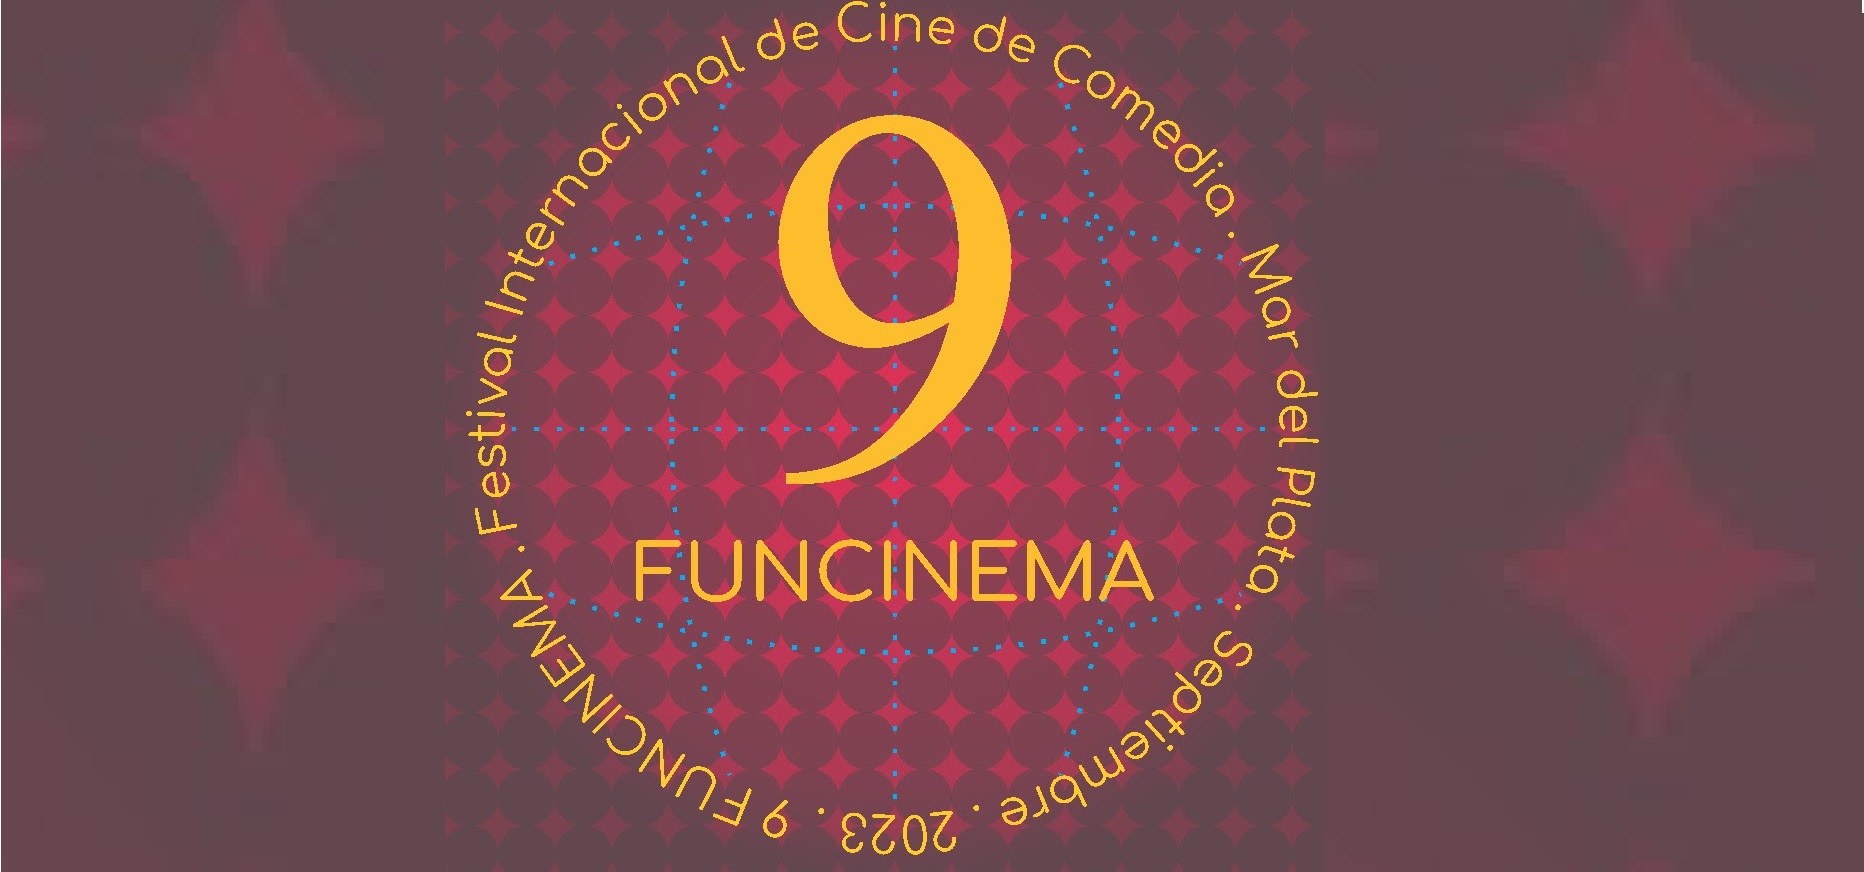 Funcinema abre la convocatoria para su 9ª edición